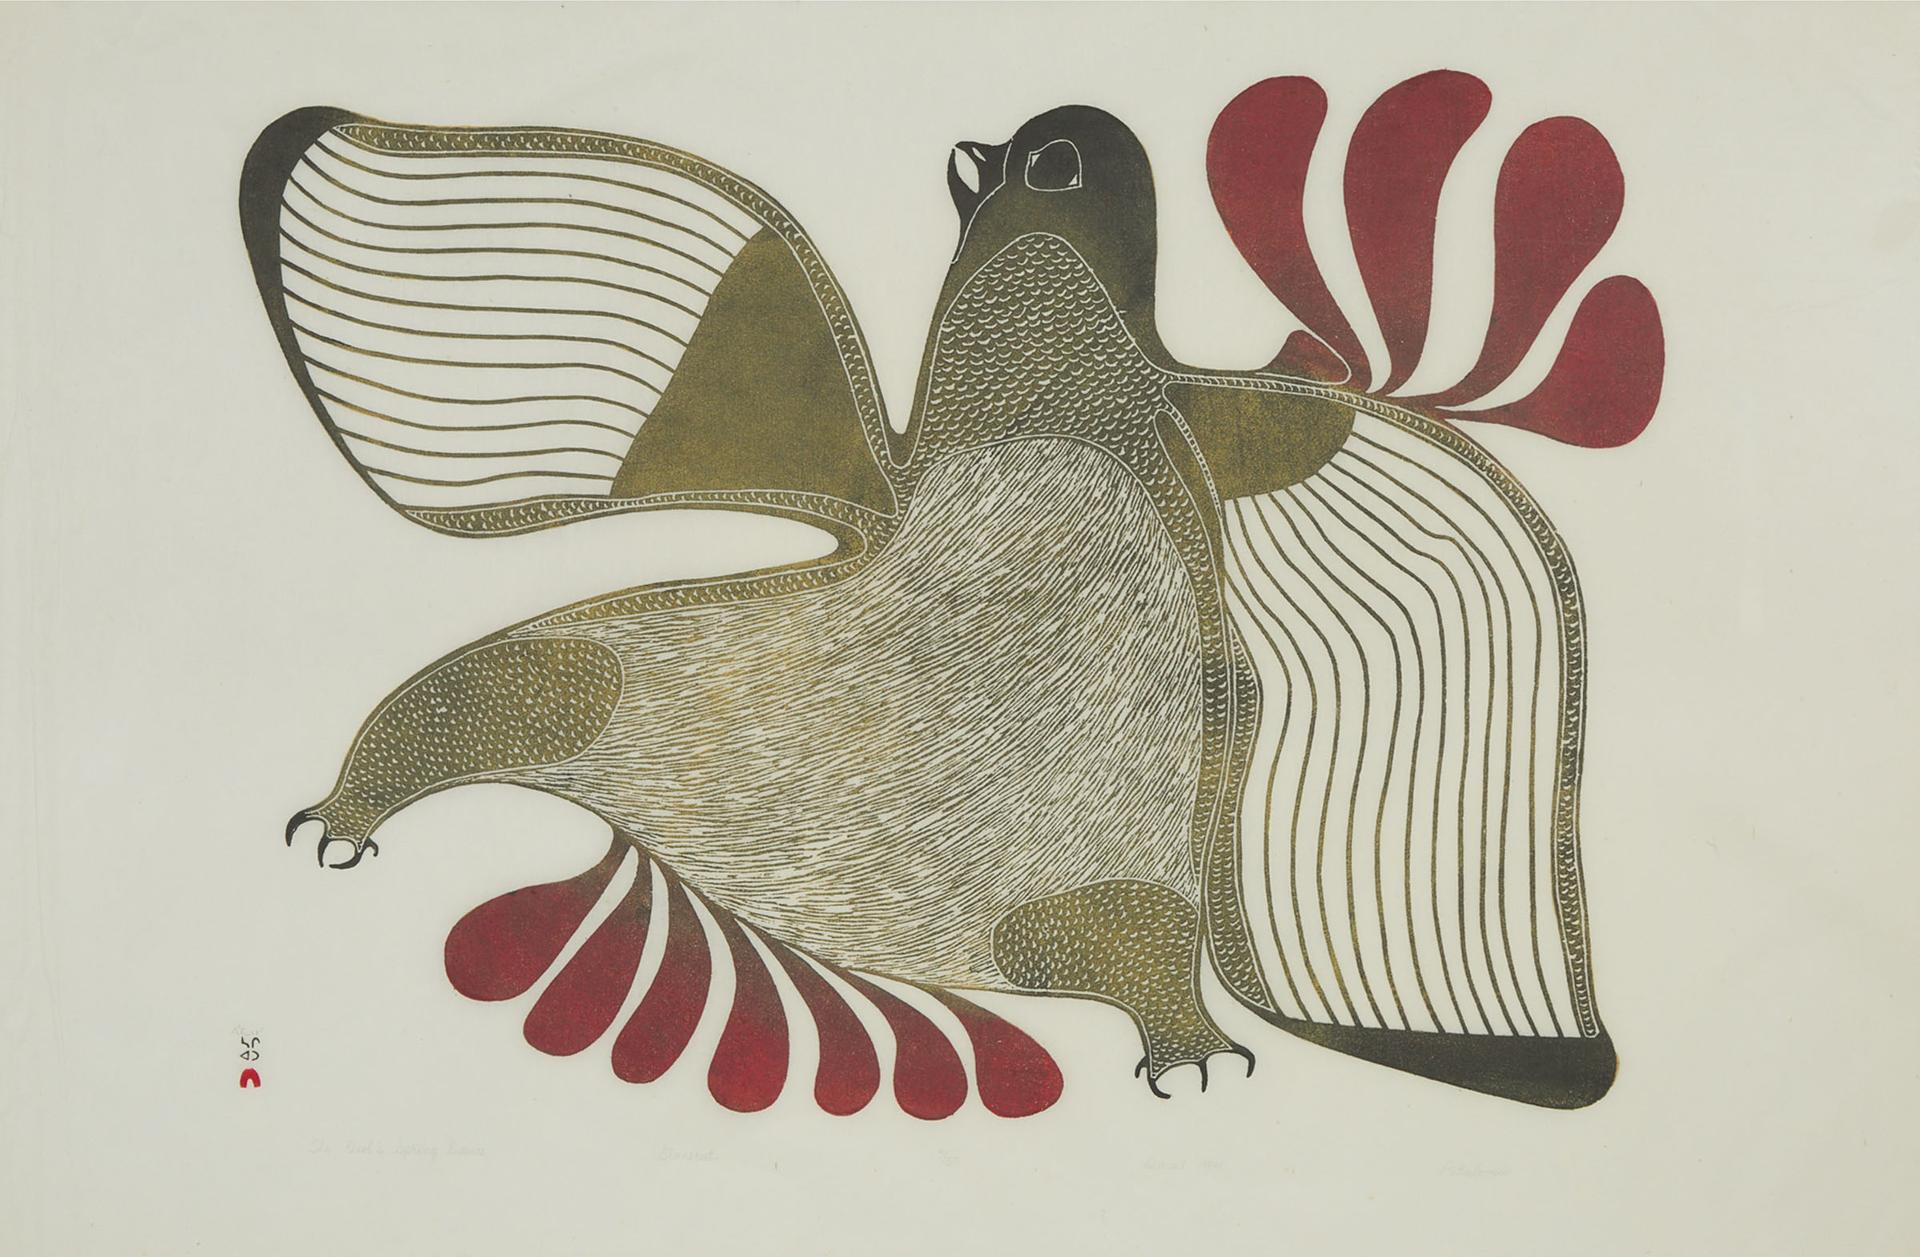 Pitaloosie Saila (1942-2021) - The Owl's Spring Dance, 1984